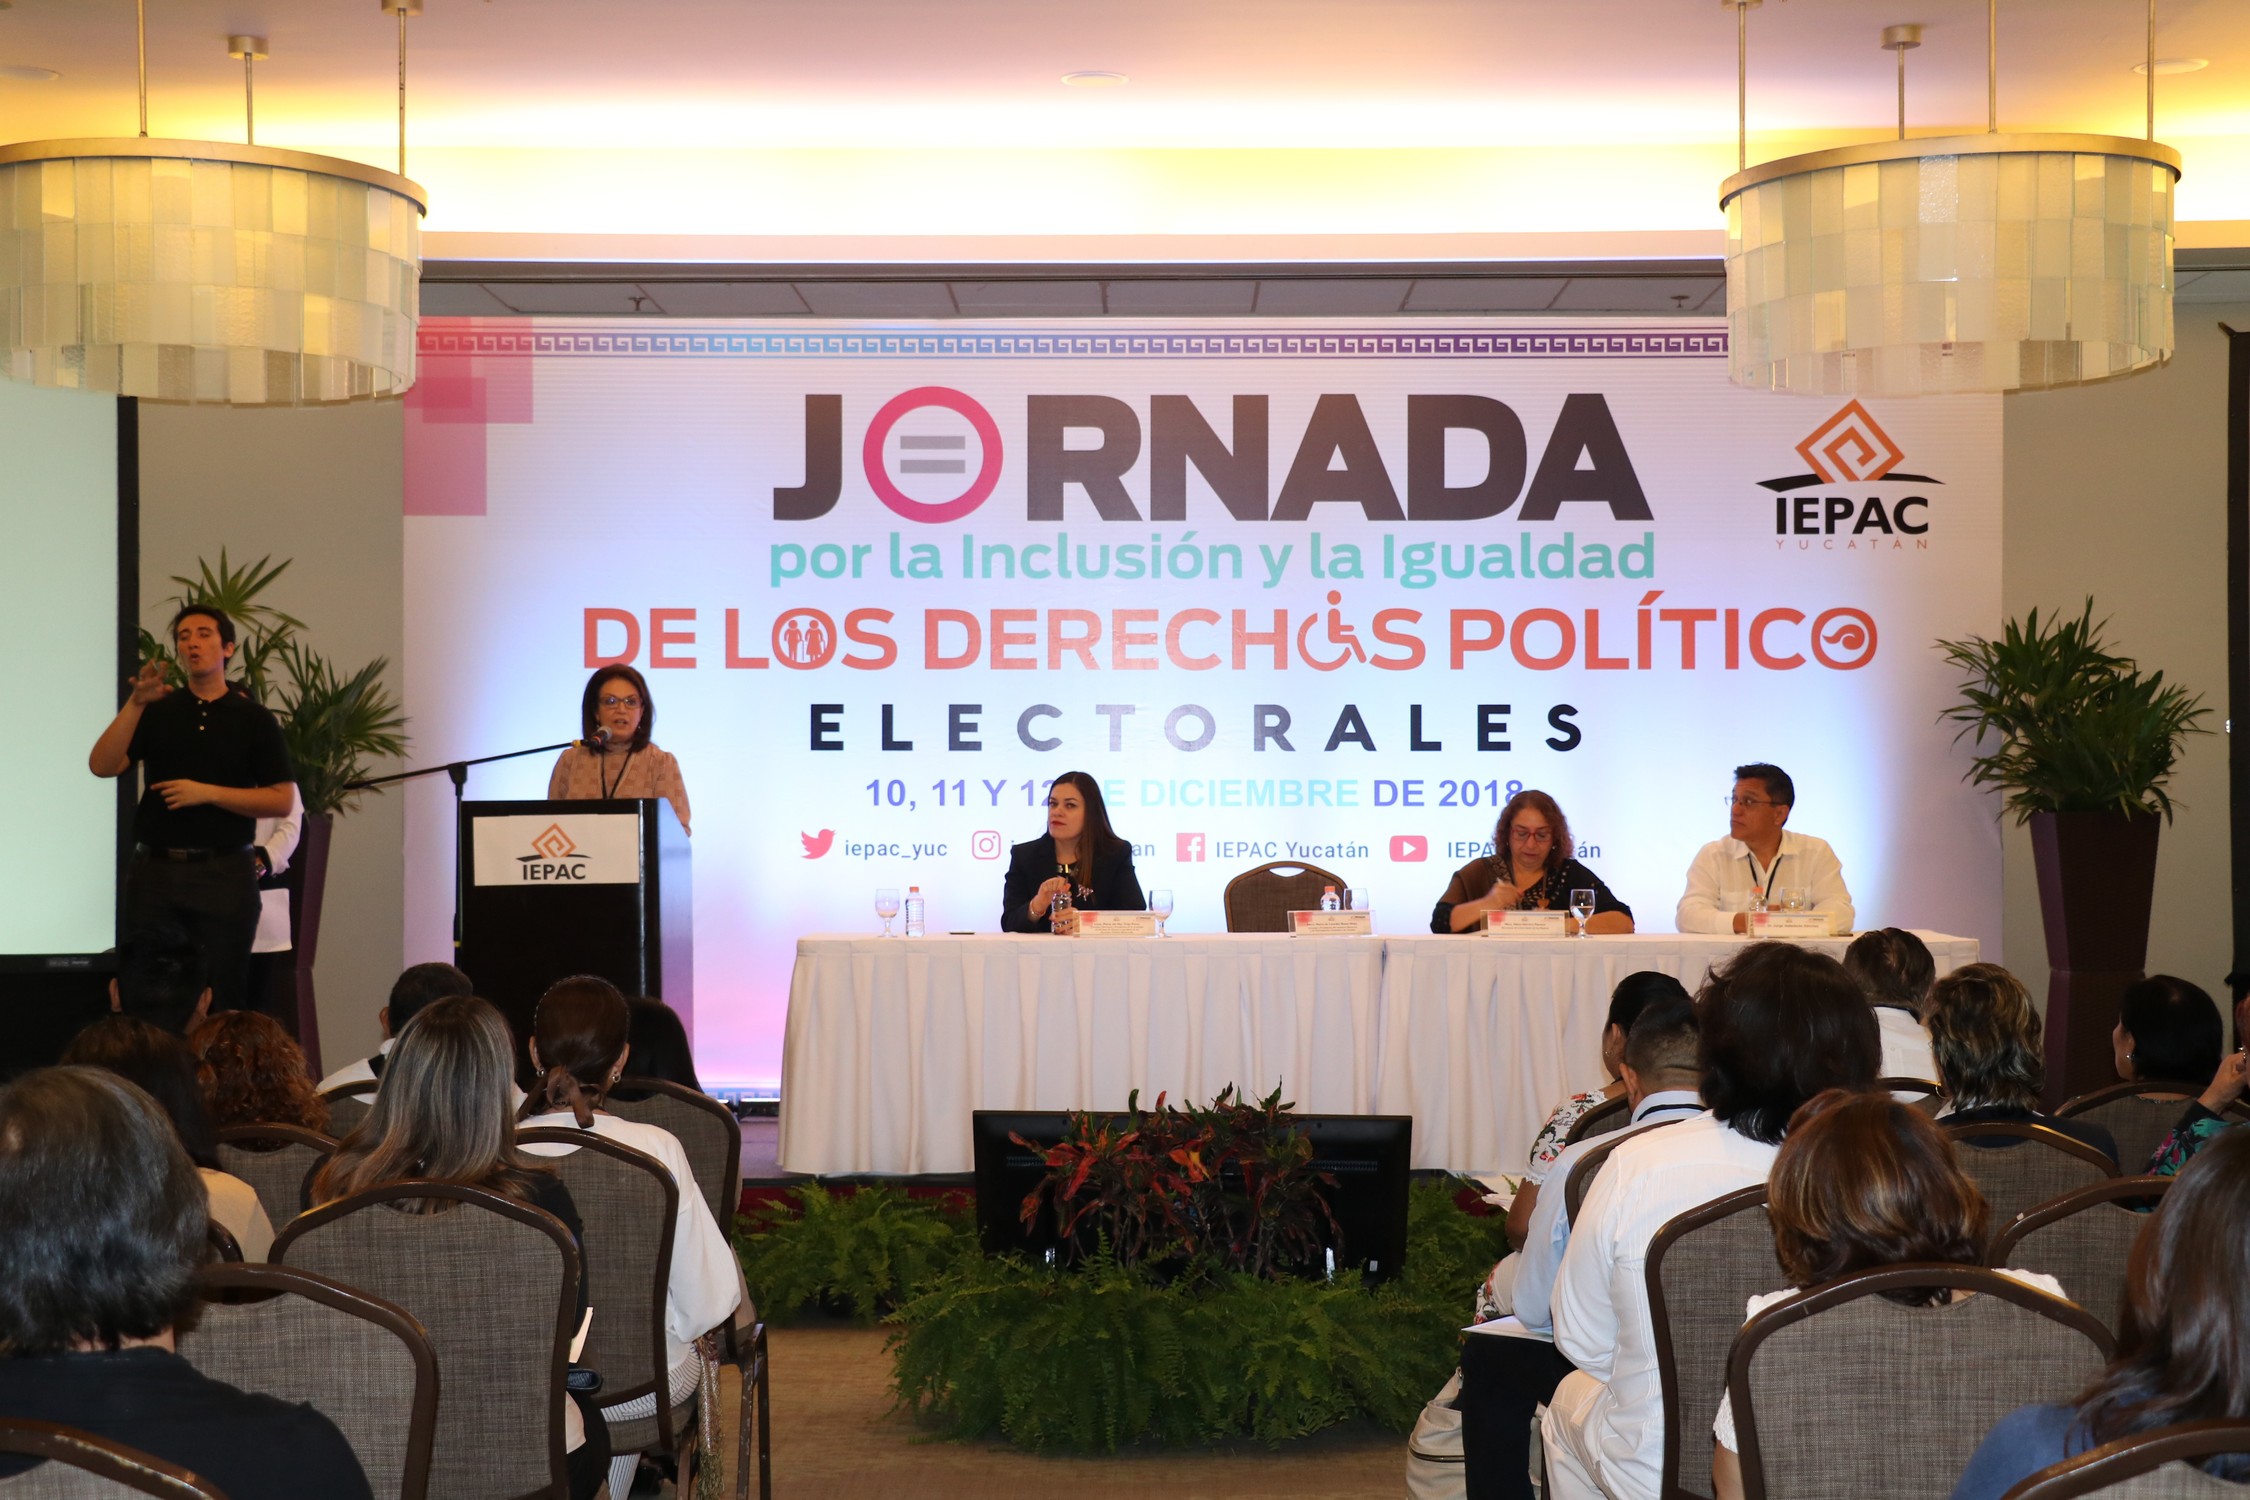 Jornada por la Inclusión y la Igualdad de los Derechos Político Electorales